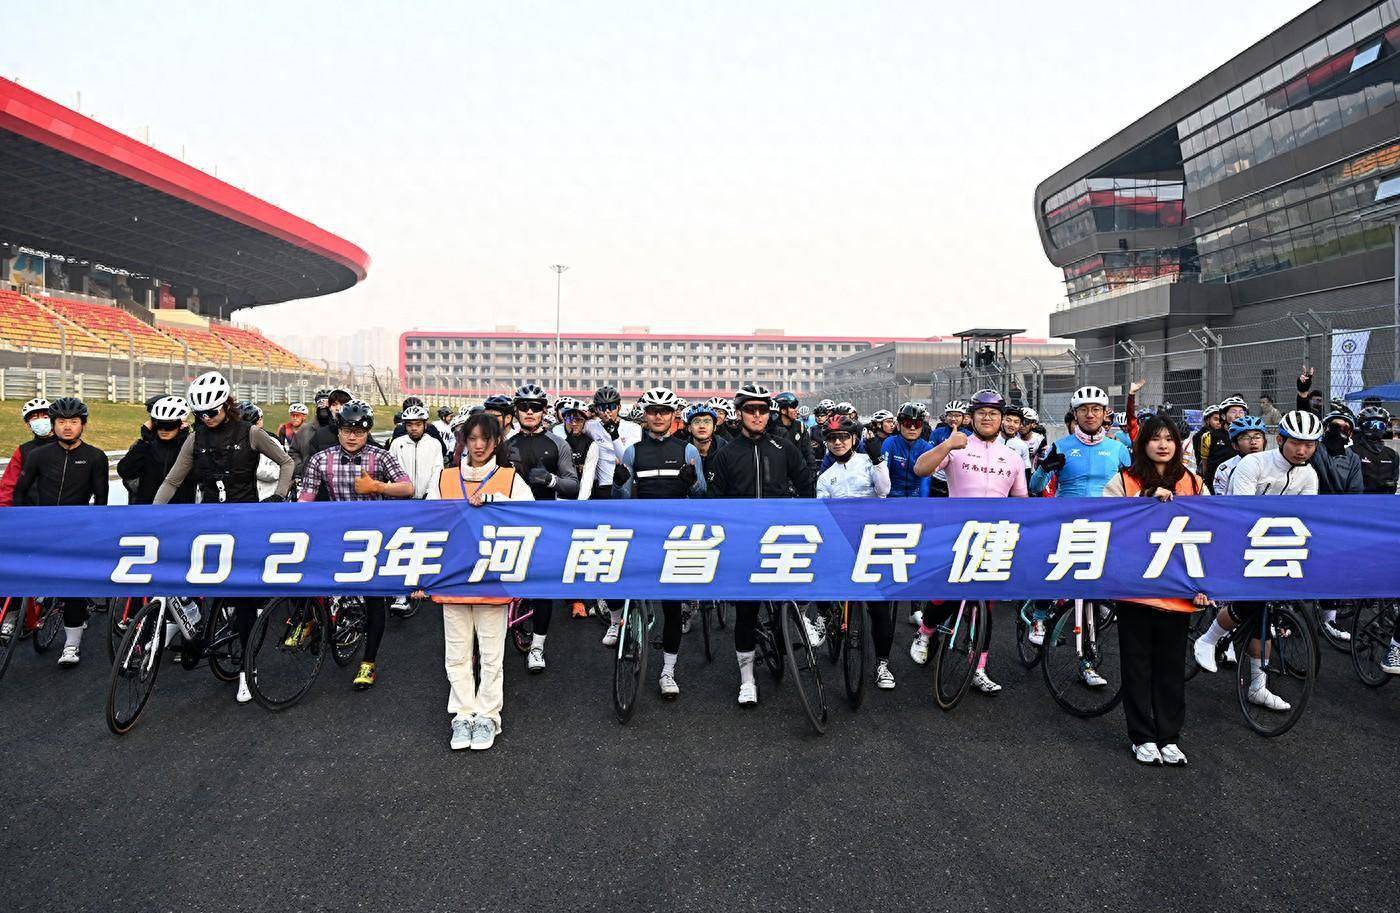 寒冬燃烧运动激情 千余名自行车爱好者骑行郑州国际赛车场插图